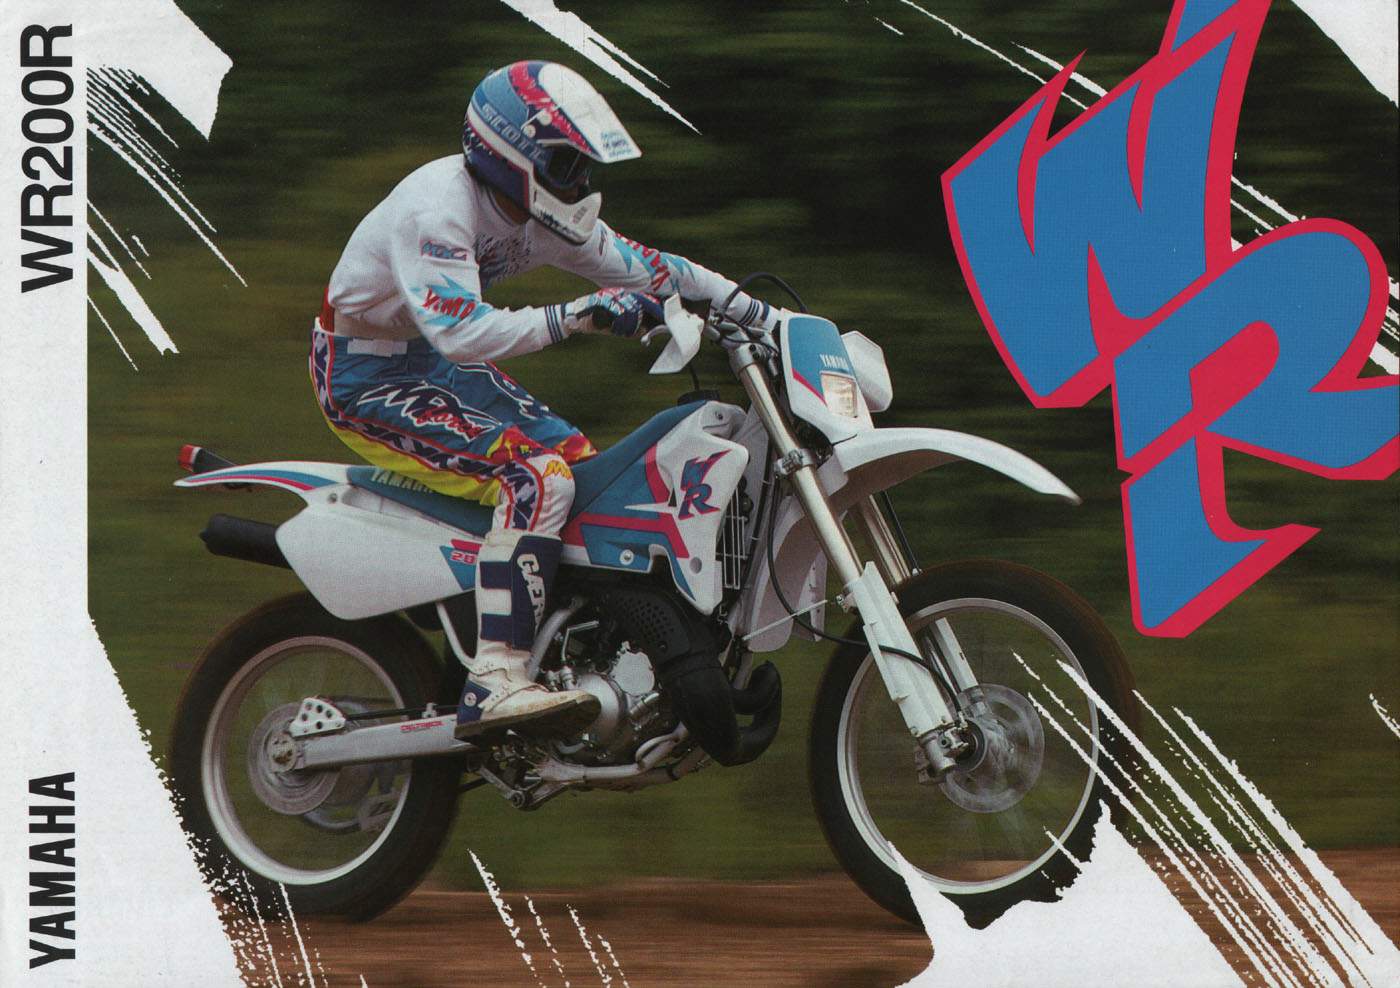 Мотоцикл Yamaha WR 200R 1993 фото